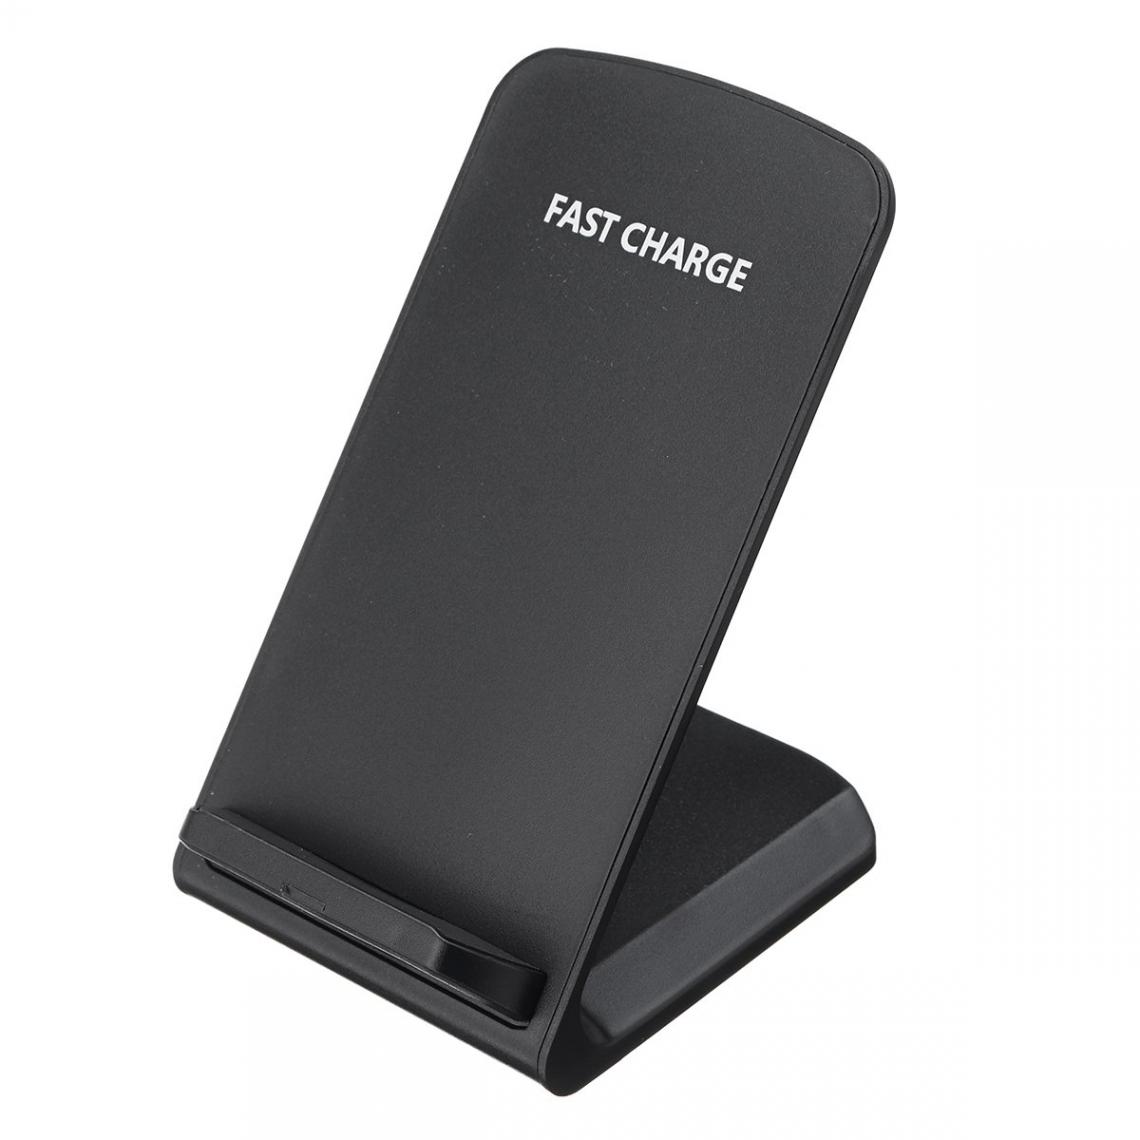 Justgreenbox - Chargeur rapide de support de charge sans fil Qi 10W, Noir - Chargeurs de piles